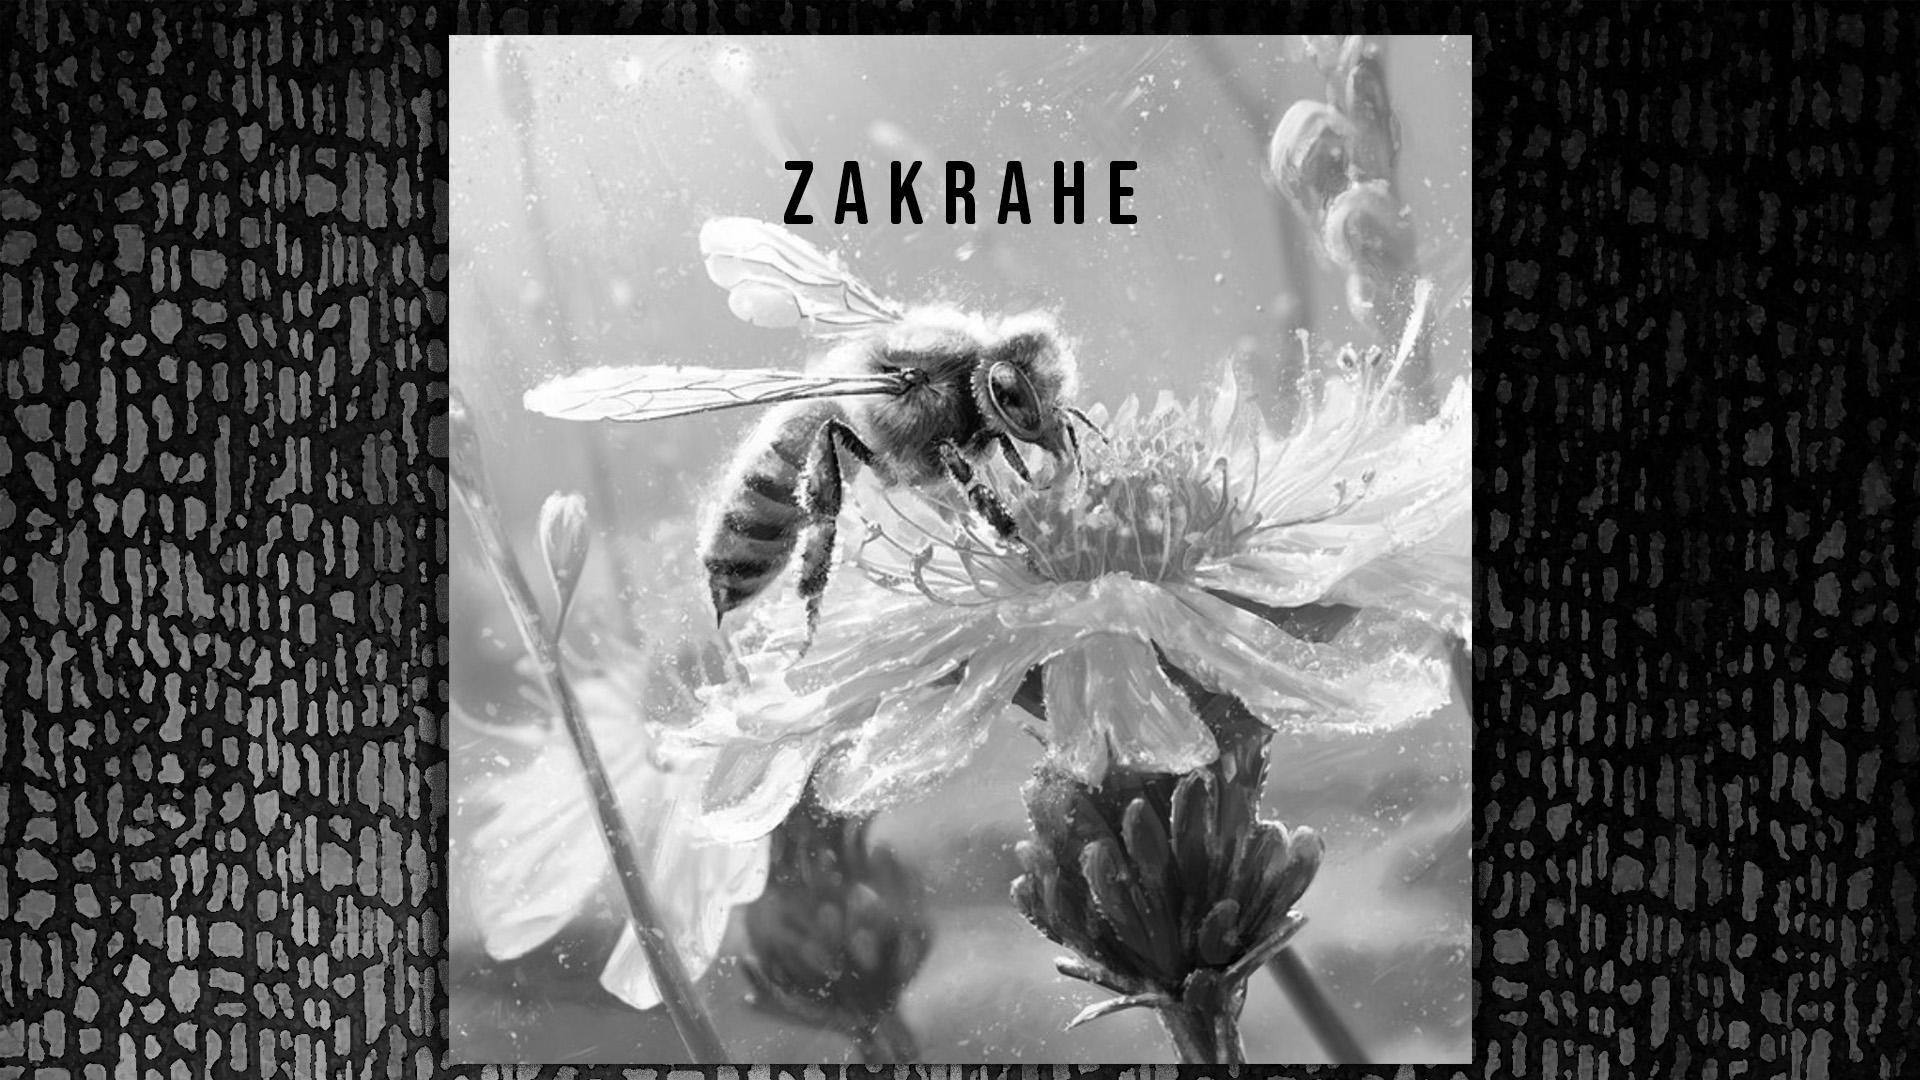 For a season, ZaKrahe